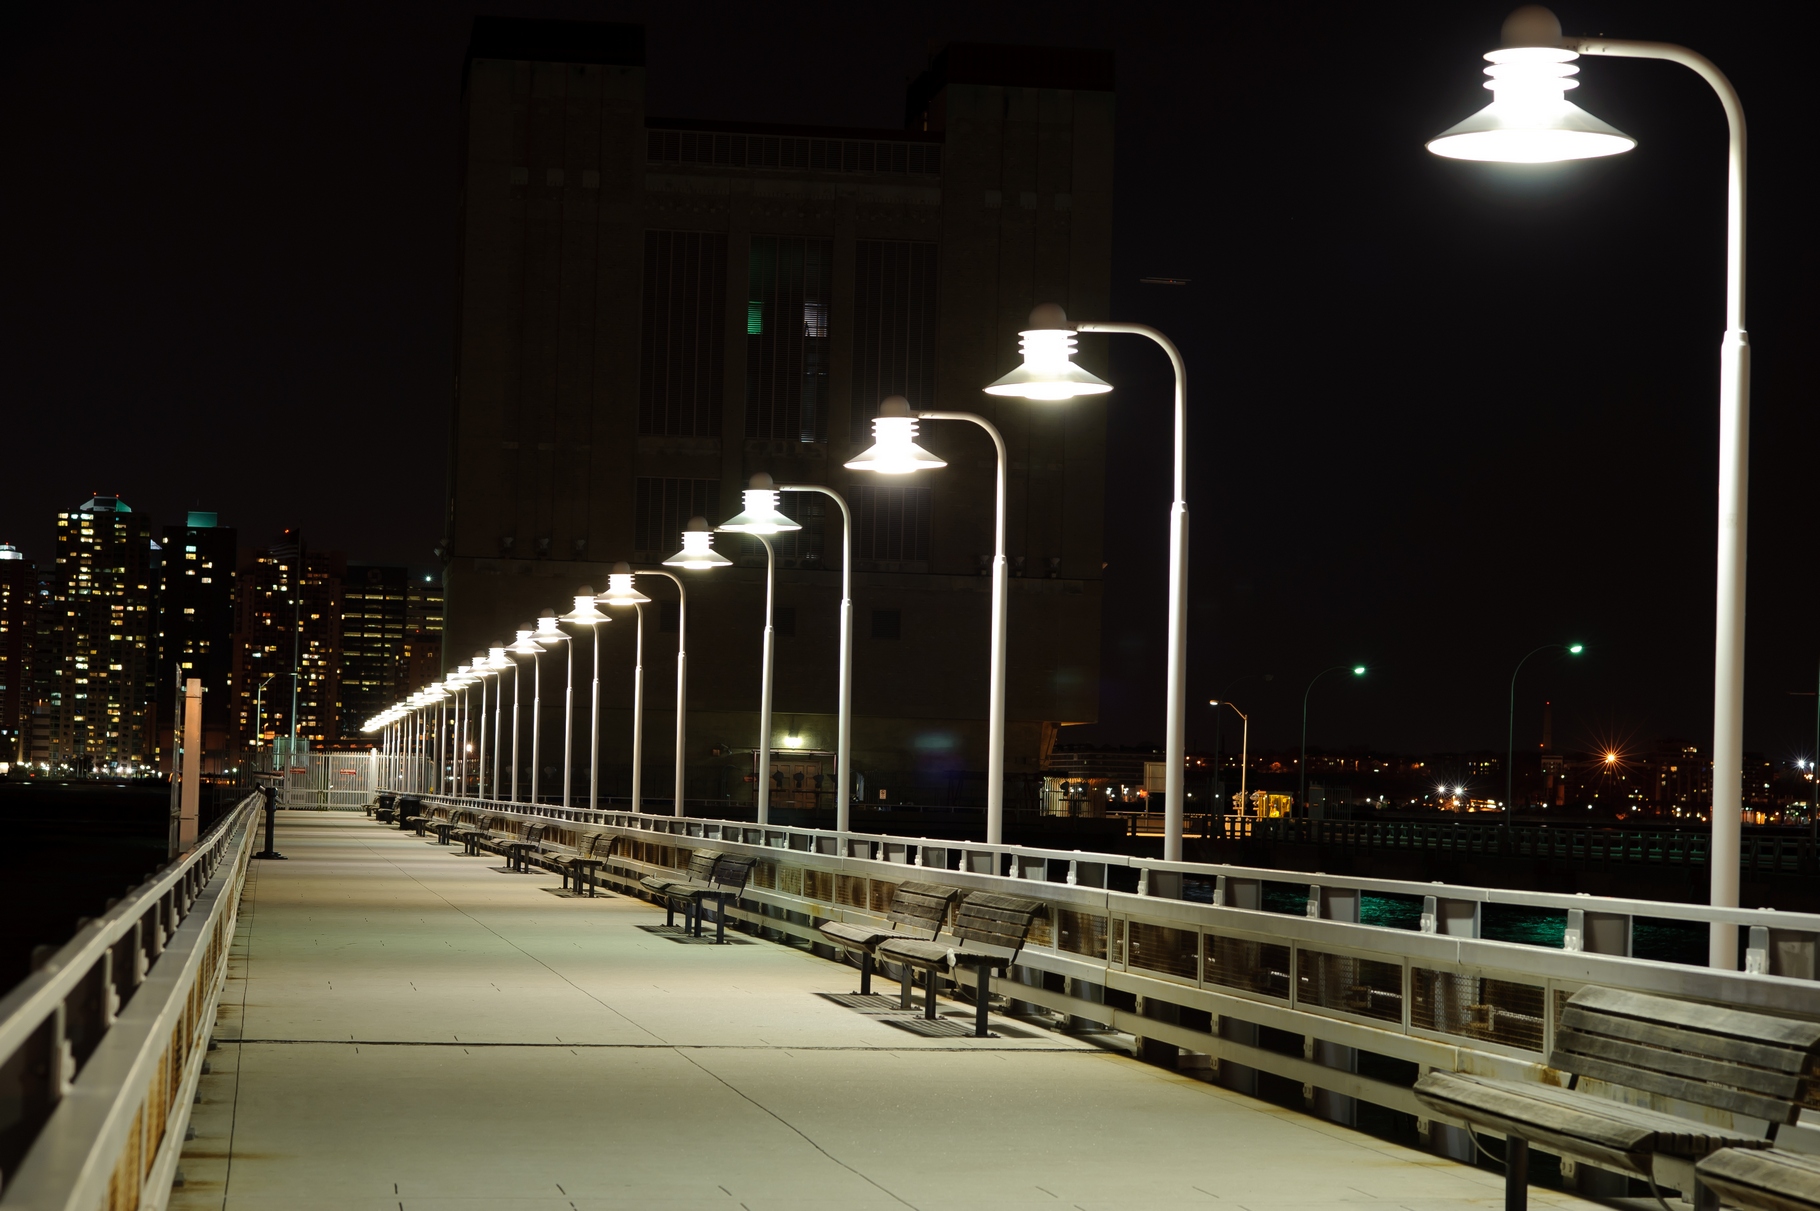 Si l’éclairage urbain est indispensable pour créer un sentiment de sécurité, rien n’interdit de l’utiliser seulement quand cela est nécessaire, c’est-à-dire au passage de piétons, cyclistes ou véhicules. © Sorbis, Shutterstock